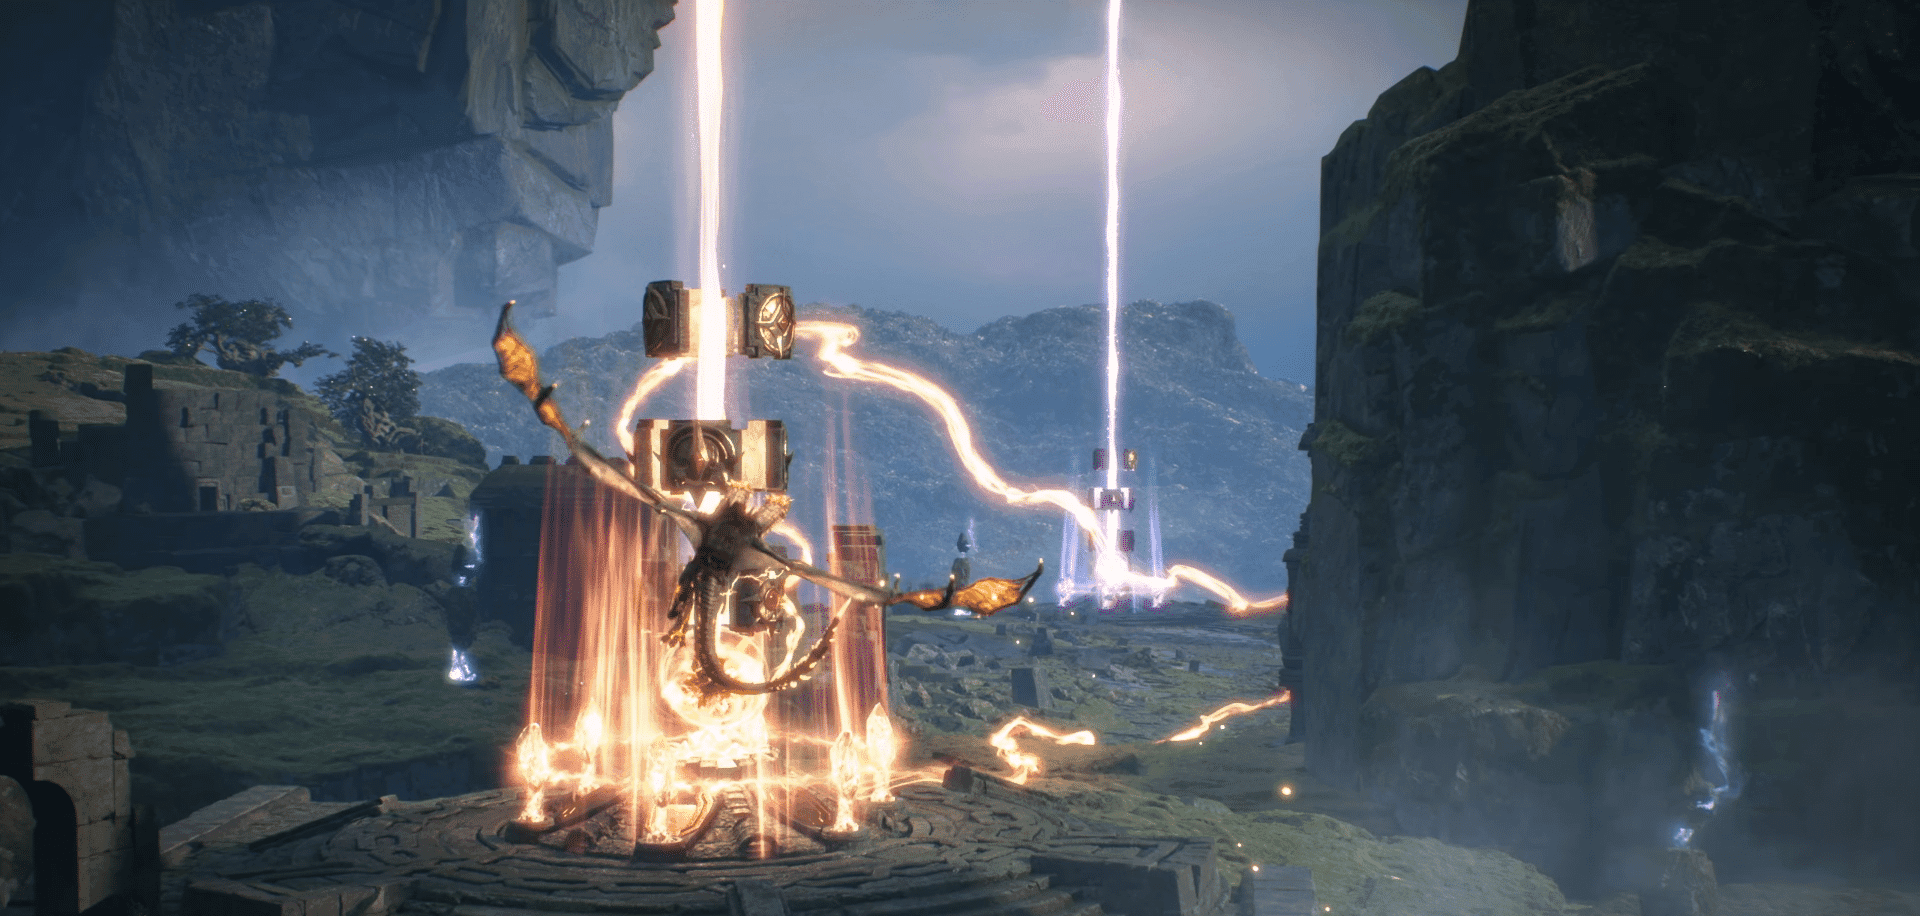 Cloud Castles, un juego de acción y estrategia de vanguardia, aprovecha el poder de Unreal Engine 5 y la tecnología blockchain Web3 para librar batallas trepidantes.